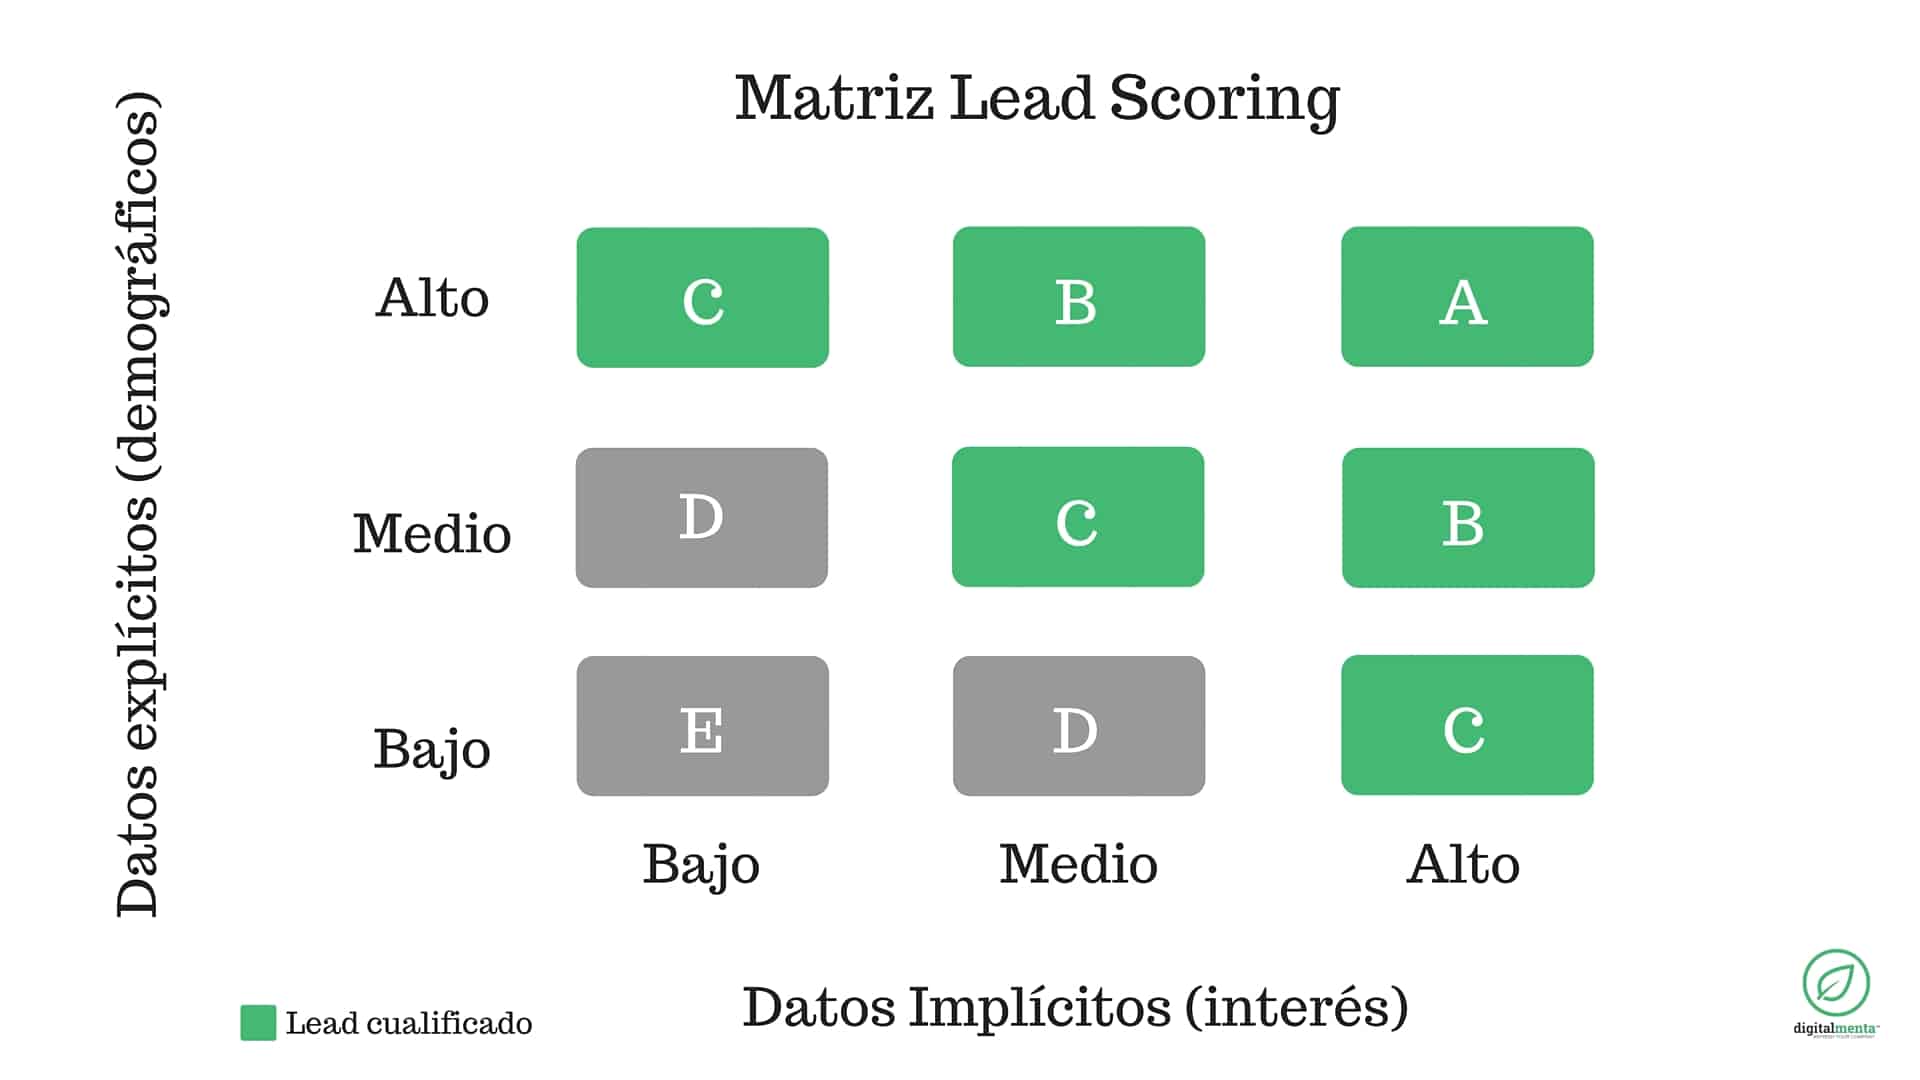 ¿Sabes cómo diseñar una matriz lead scoring?